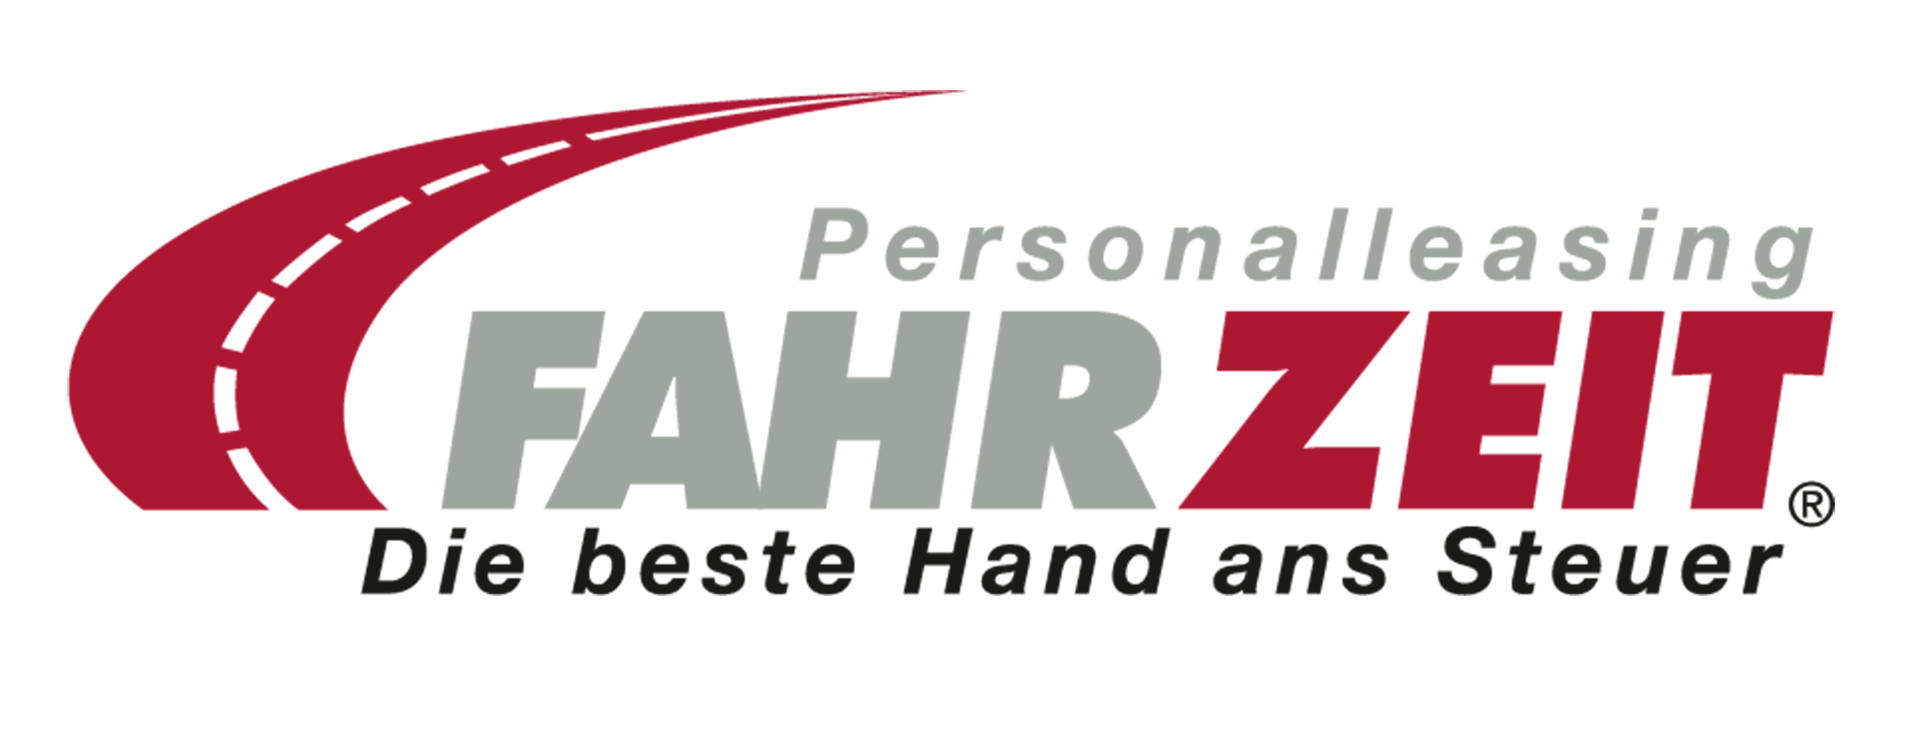 FAHR-ZEIT Personalleasing Deutschland